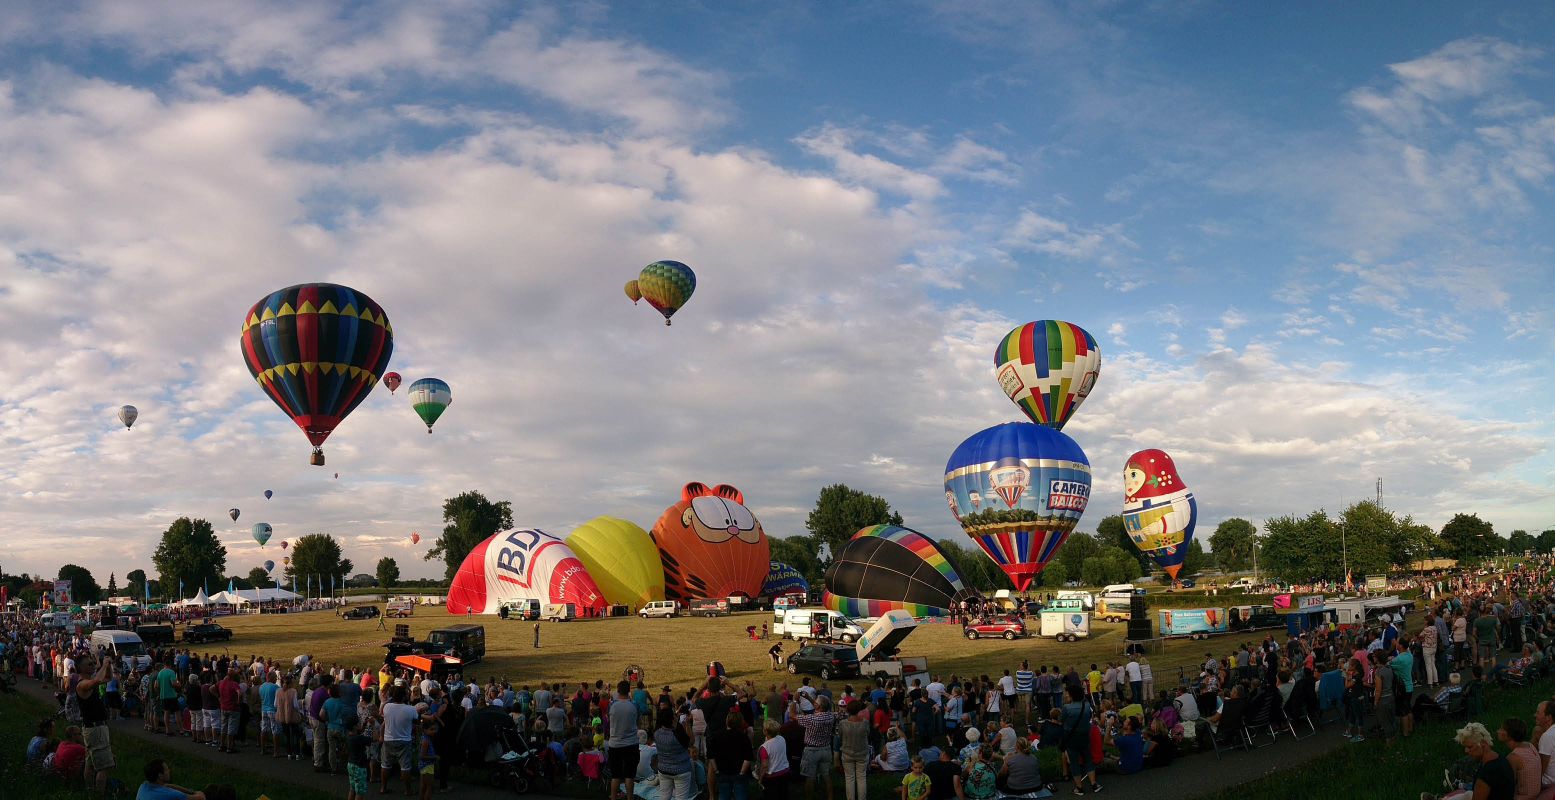 De luchtballonnen van Ballonfestival Grave kunnen rekenen op veel toeschouwers. Foto: Ballonfestival Grave